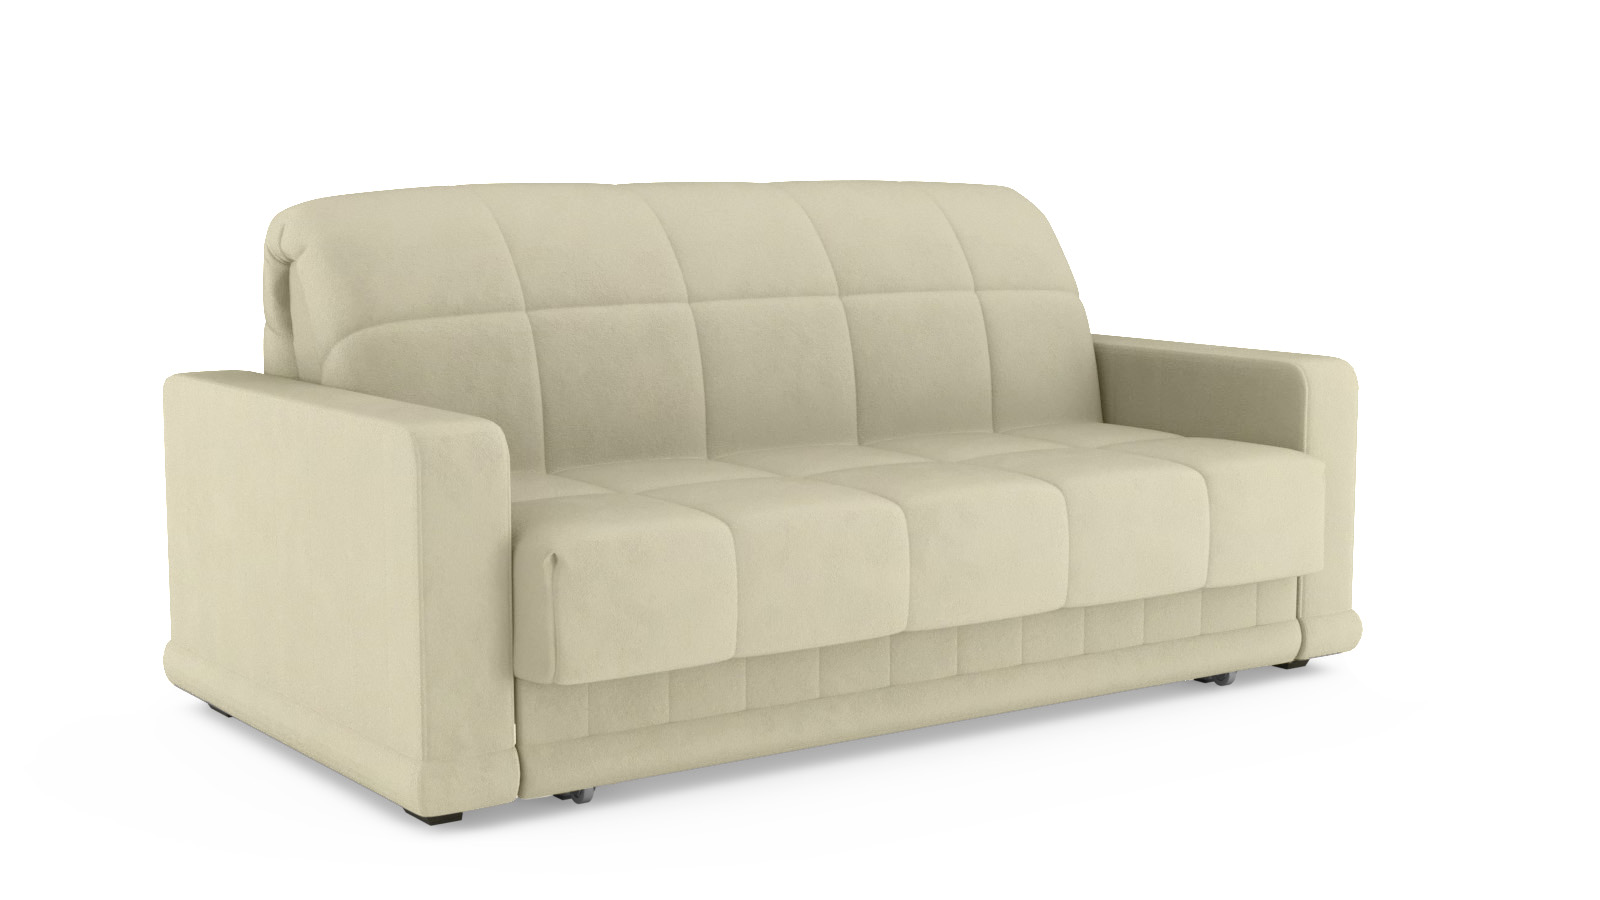 Купить диван в новосибирске недорого от производителя. Прямой диван Carina Nova Dumont 24. Sky Velvet 21 Аскона.